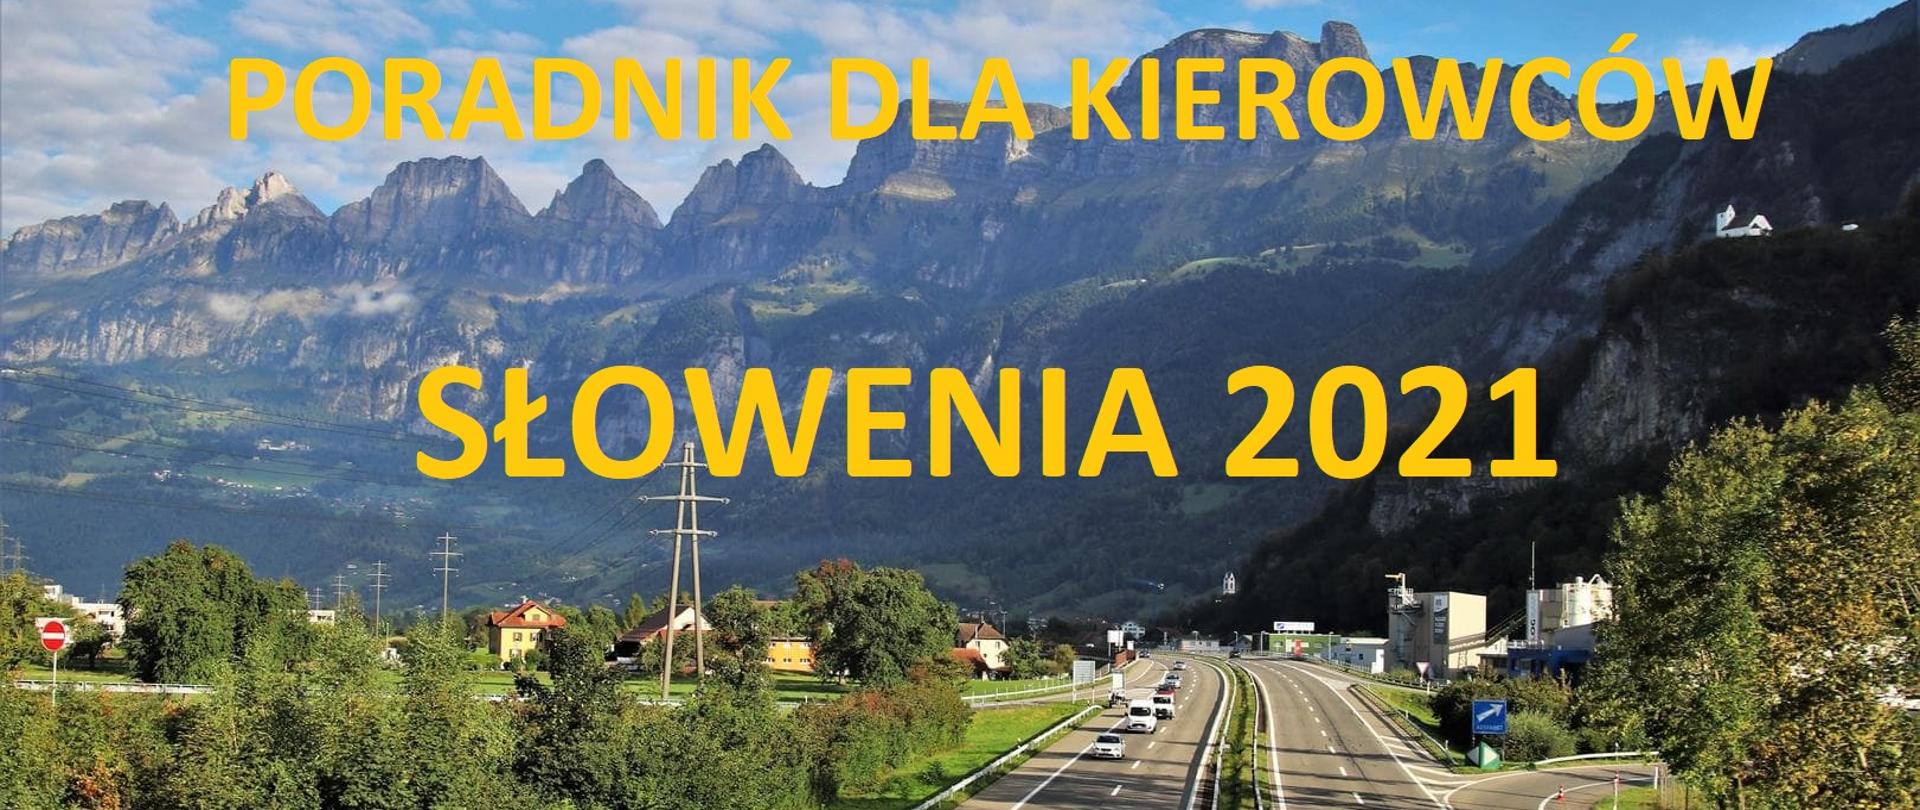 Poradnik dla kierowców - Słowenia 2021